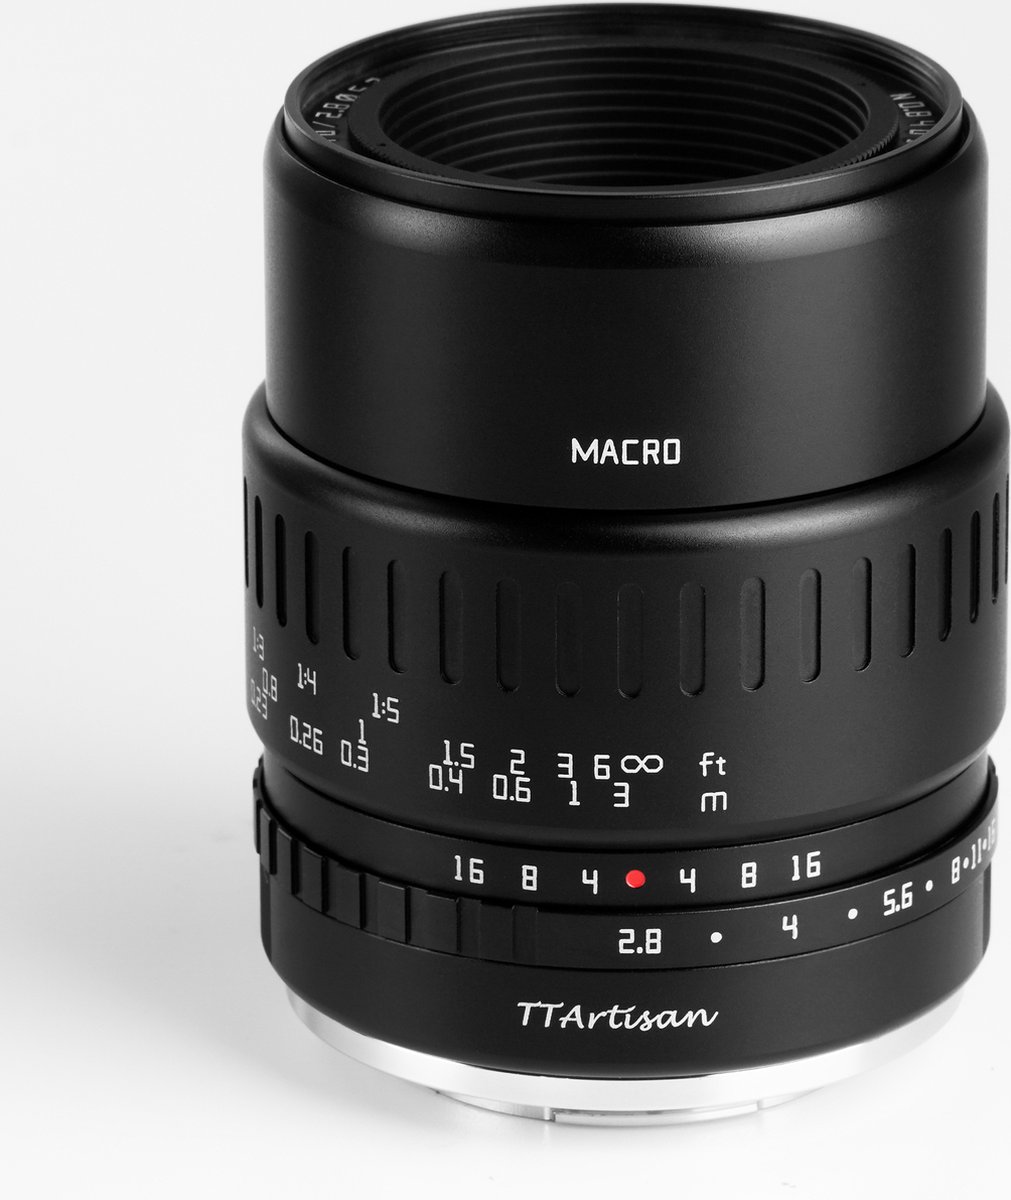 TT Artisan - Cameralens - 40mm F2.8 Macro APS-C voor Canon EOS M-vatting